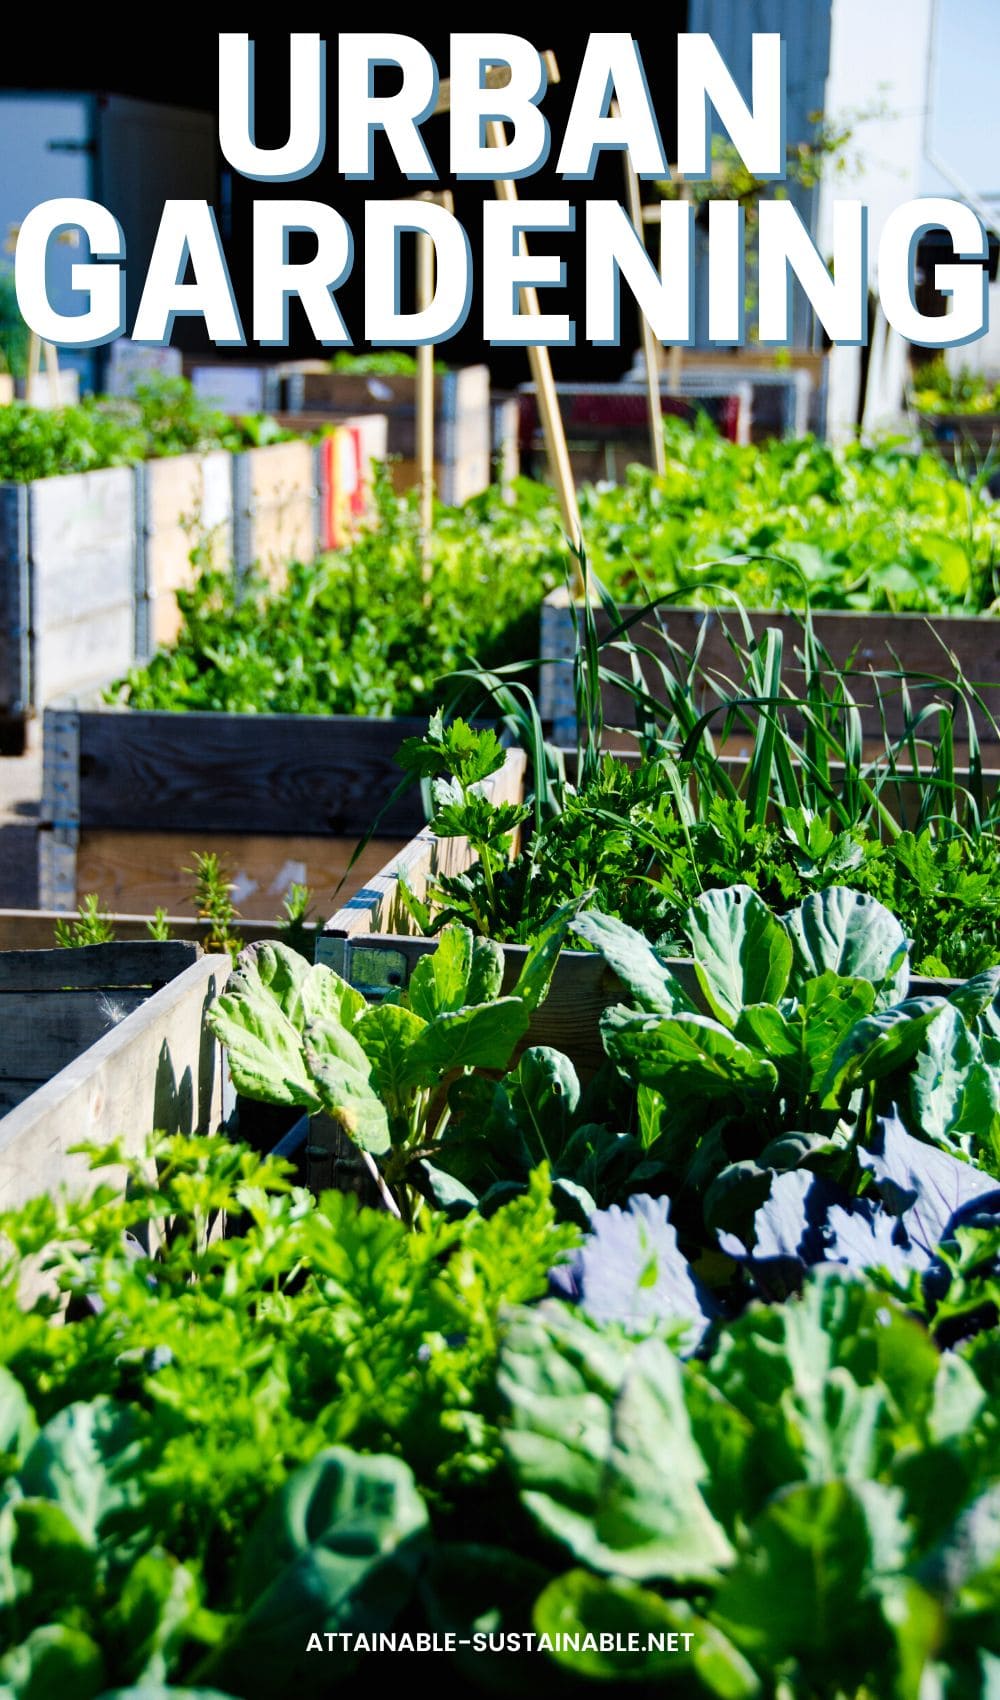 urban vegetable garden growing in raised beds.